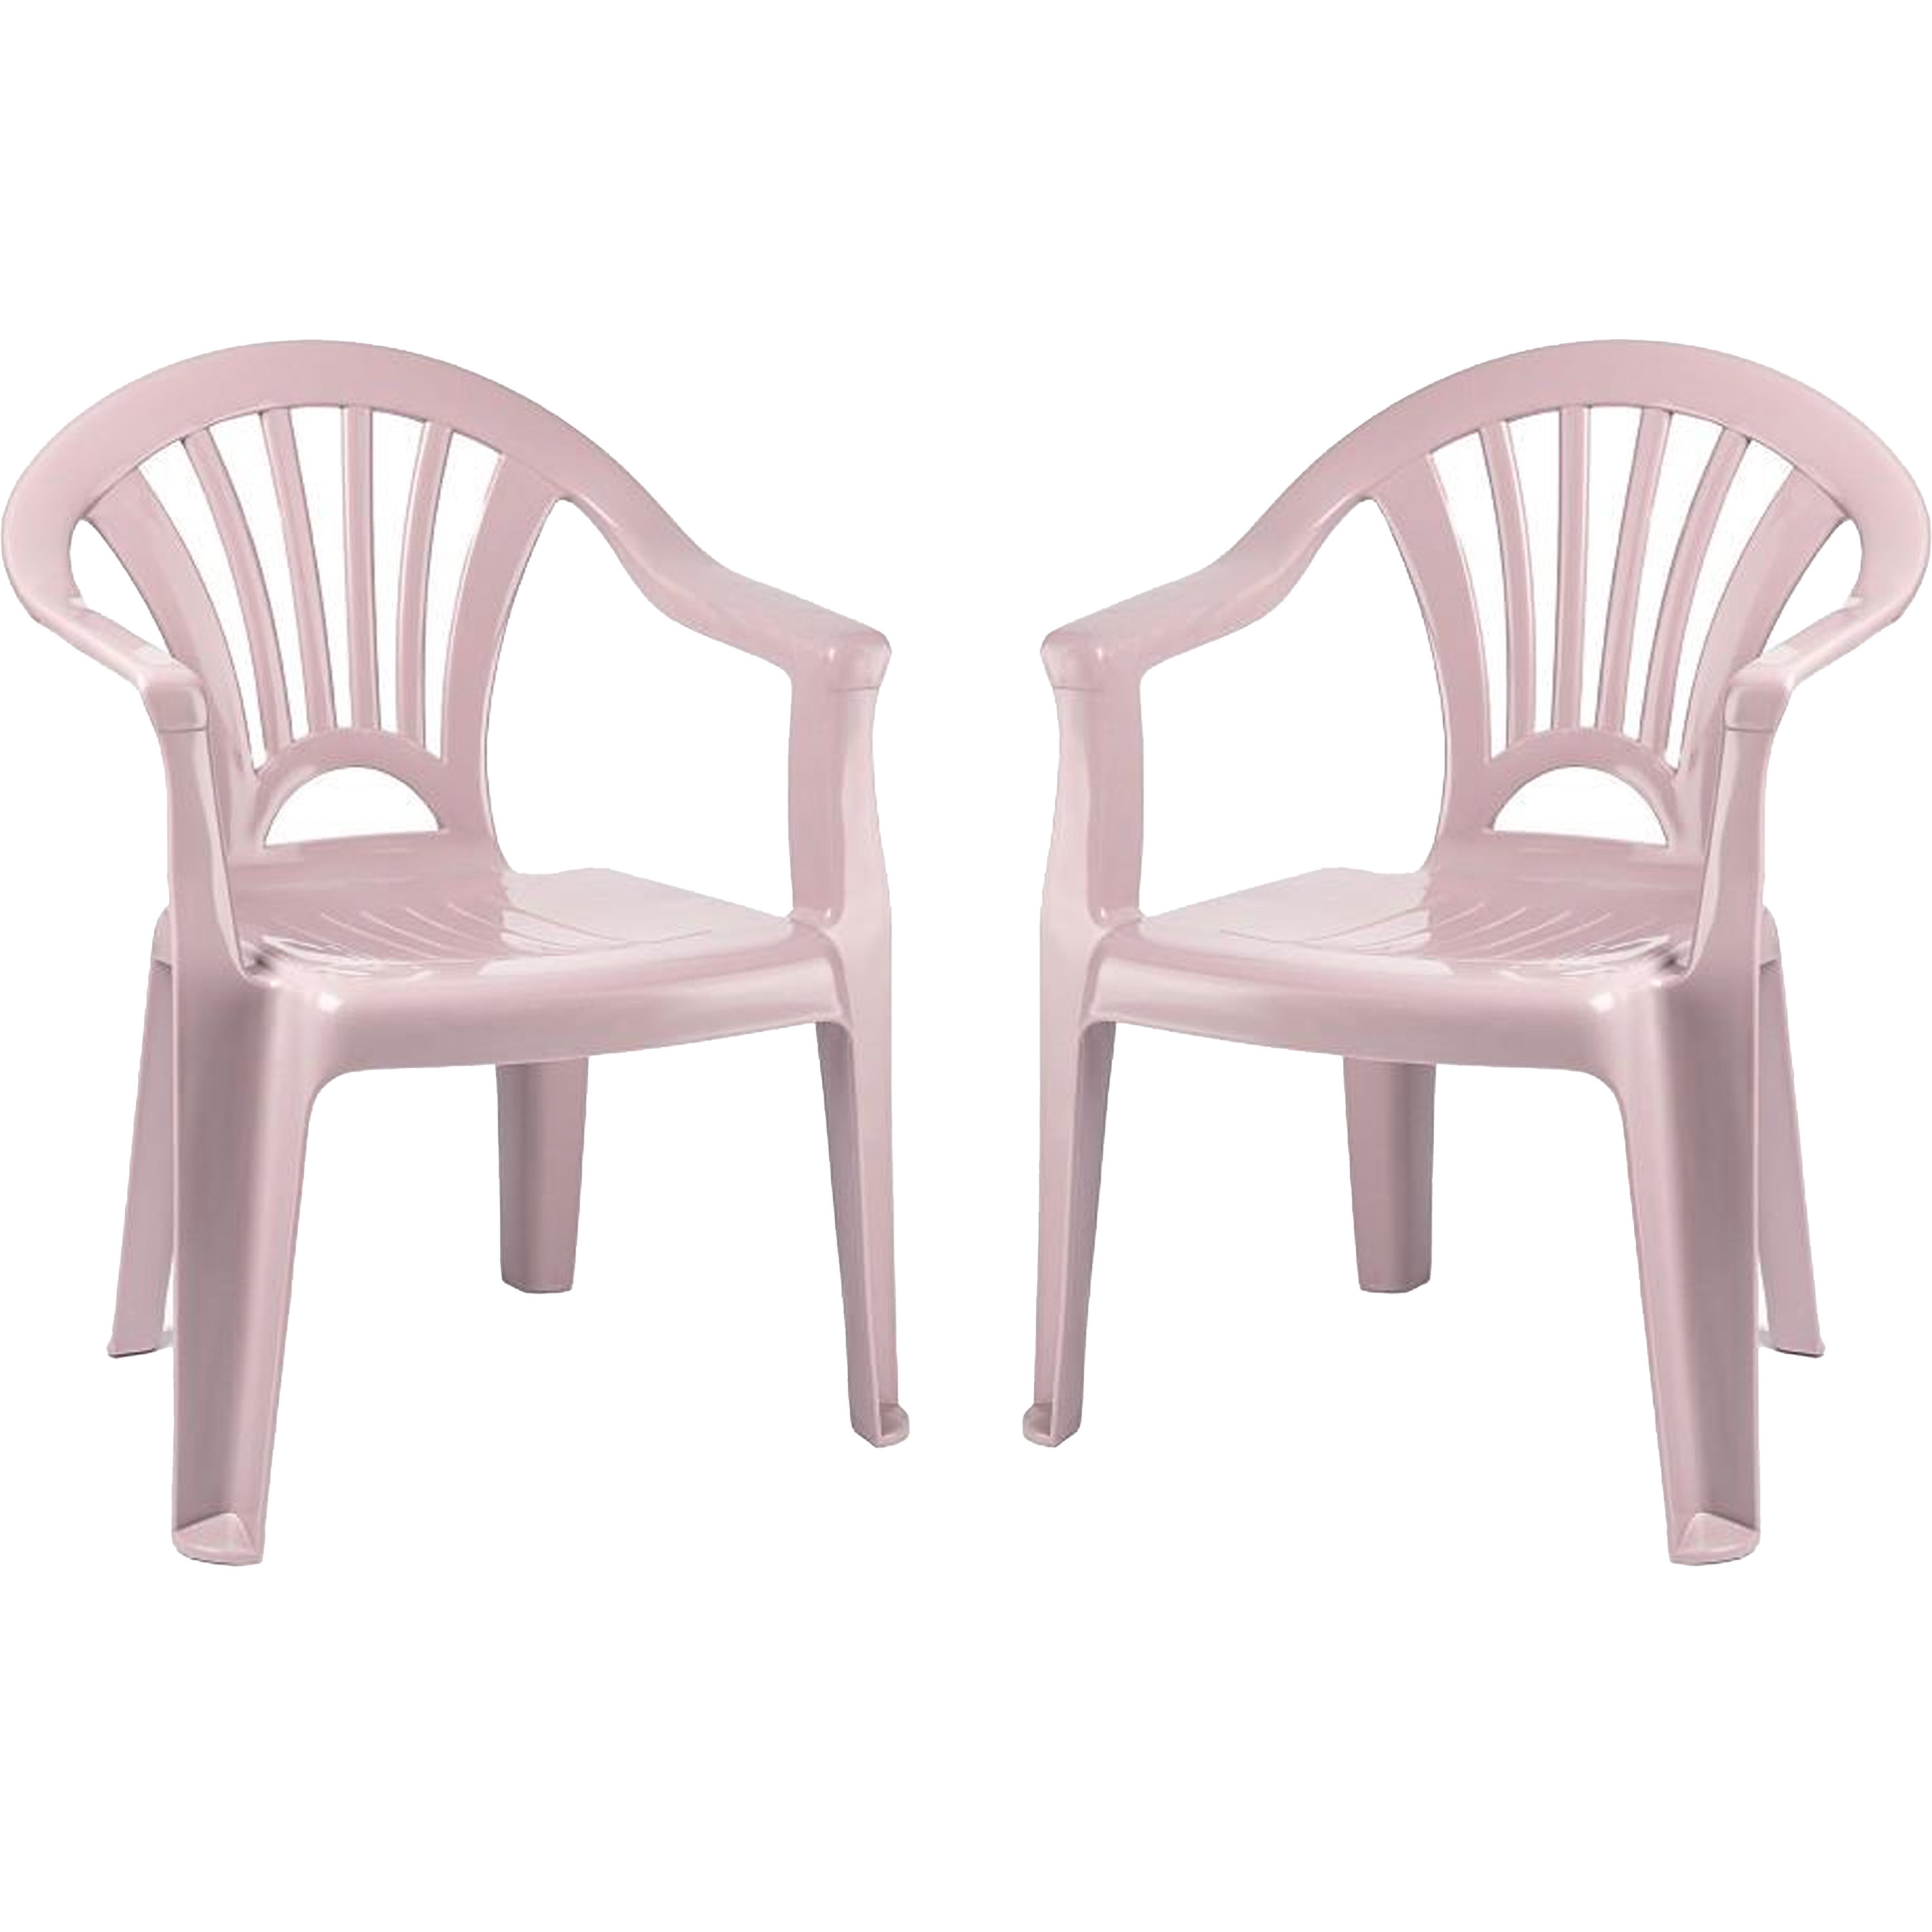 Kinderstoel 2x stuks kunststof roze 35 x 28 x 50 cm tuin-camping-slaapkamer